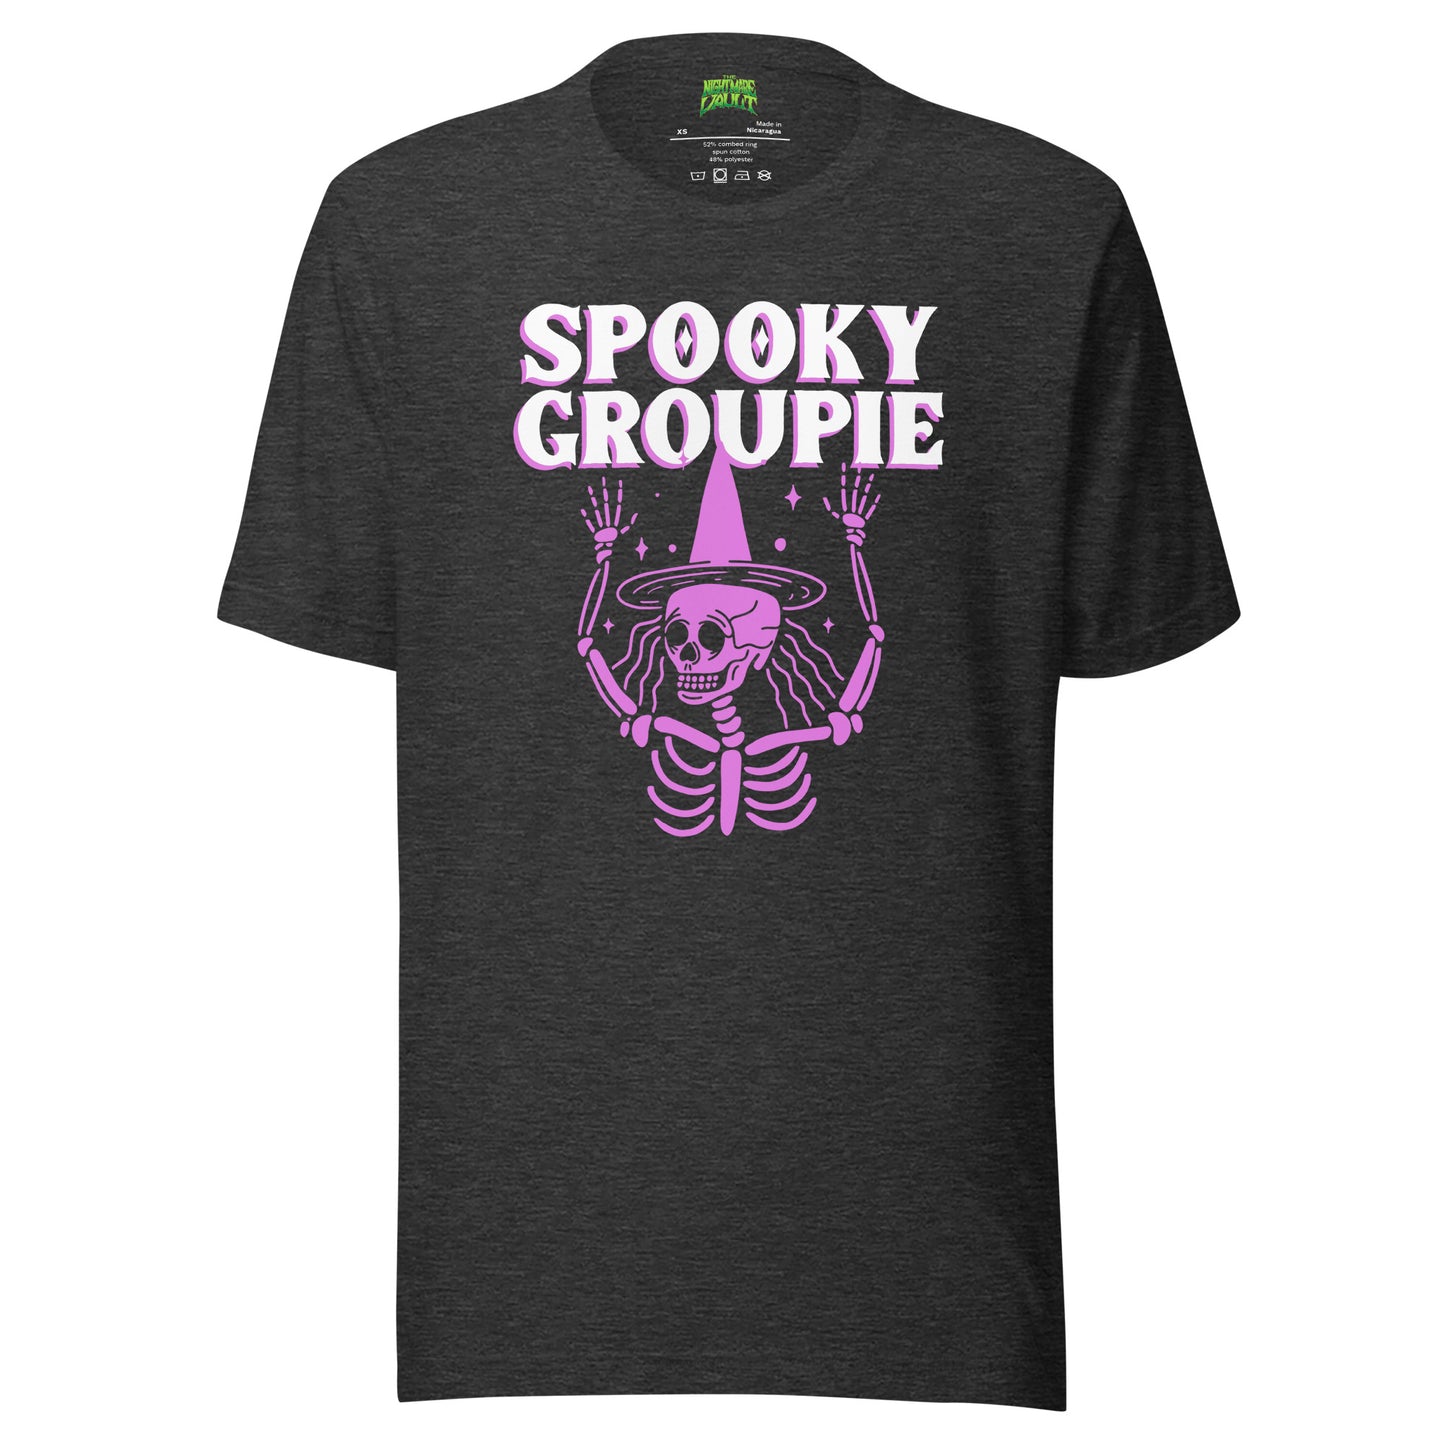 Spooky Groupie tee